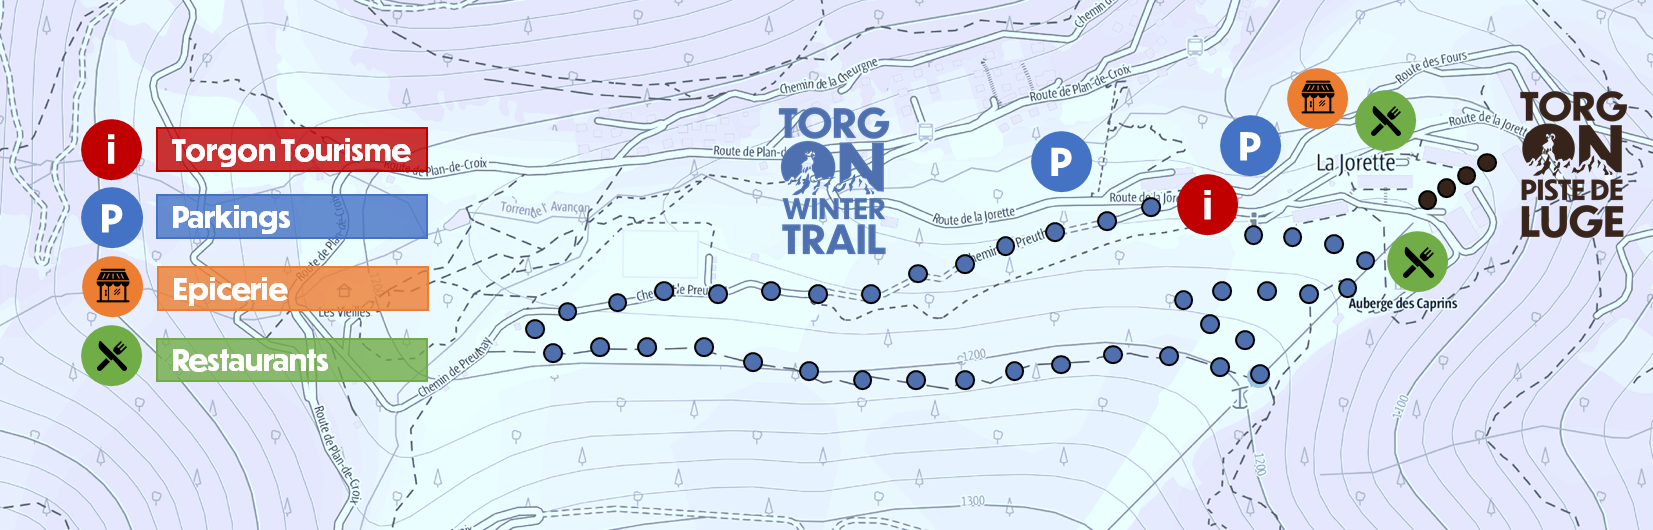 plan-winter-trail-et-piste-de-luge-4839